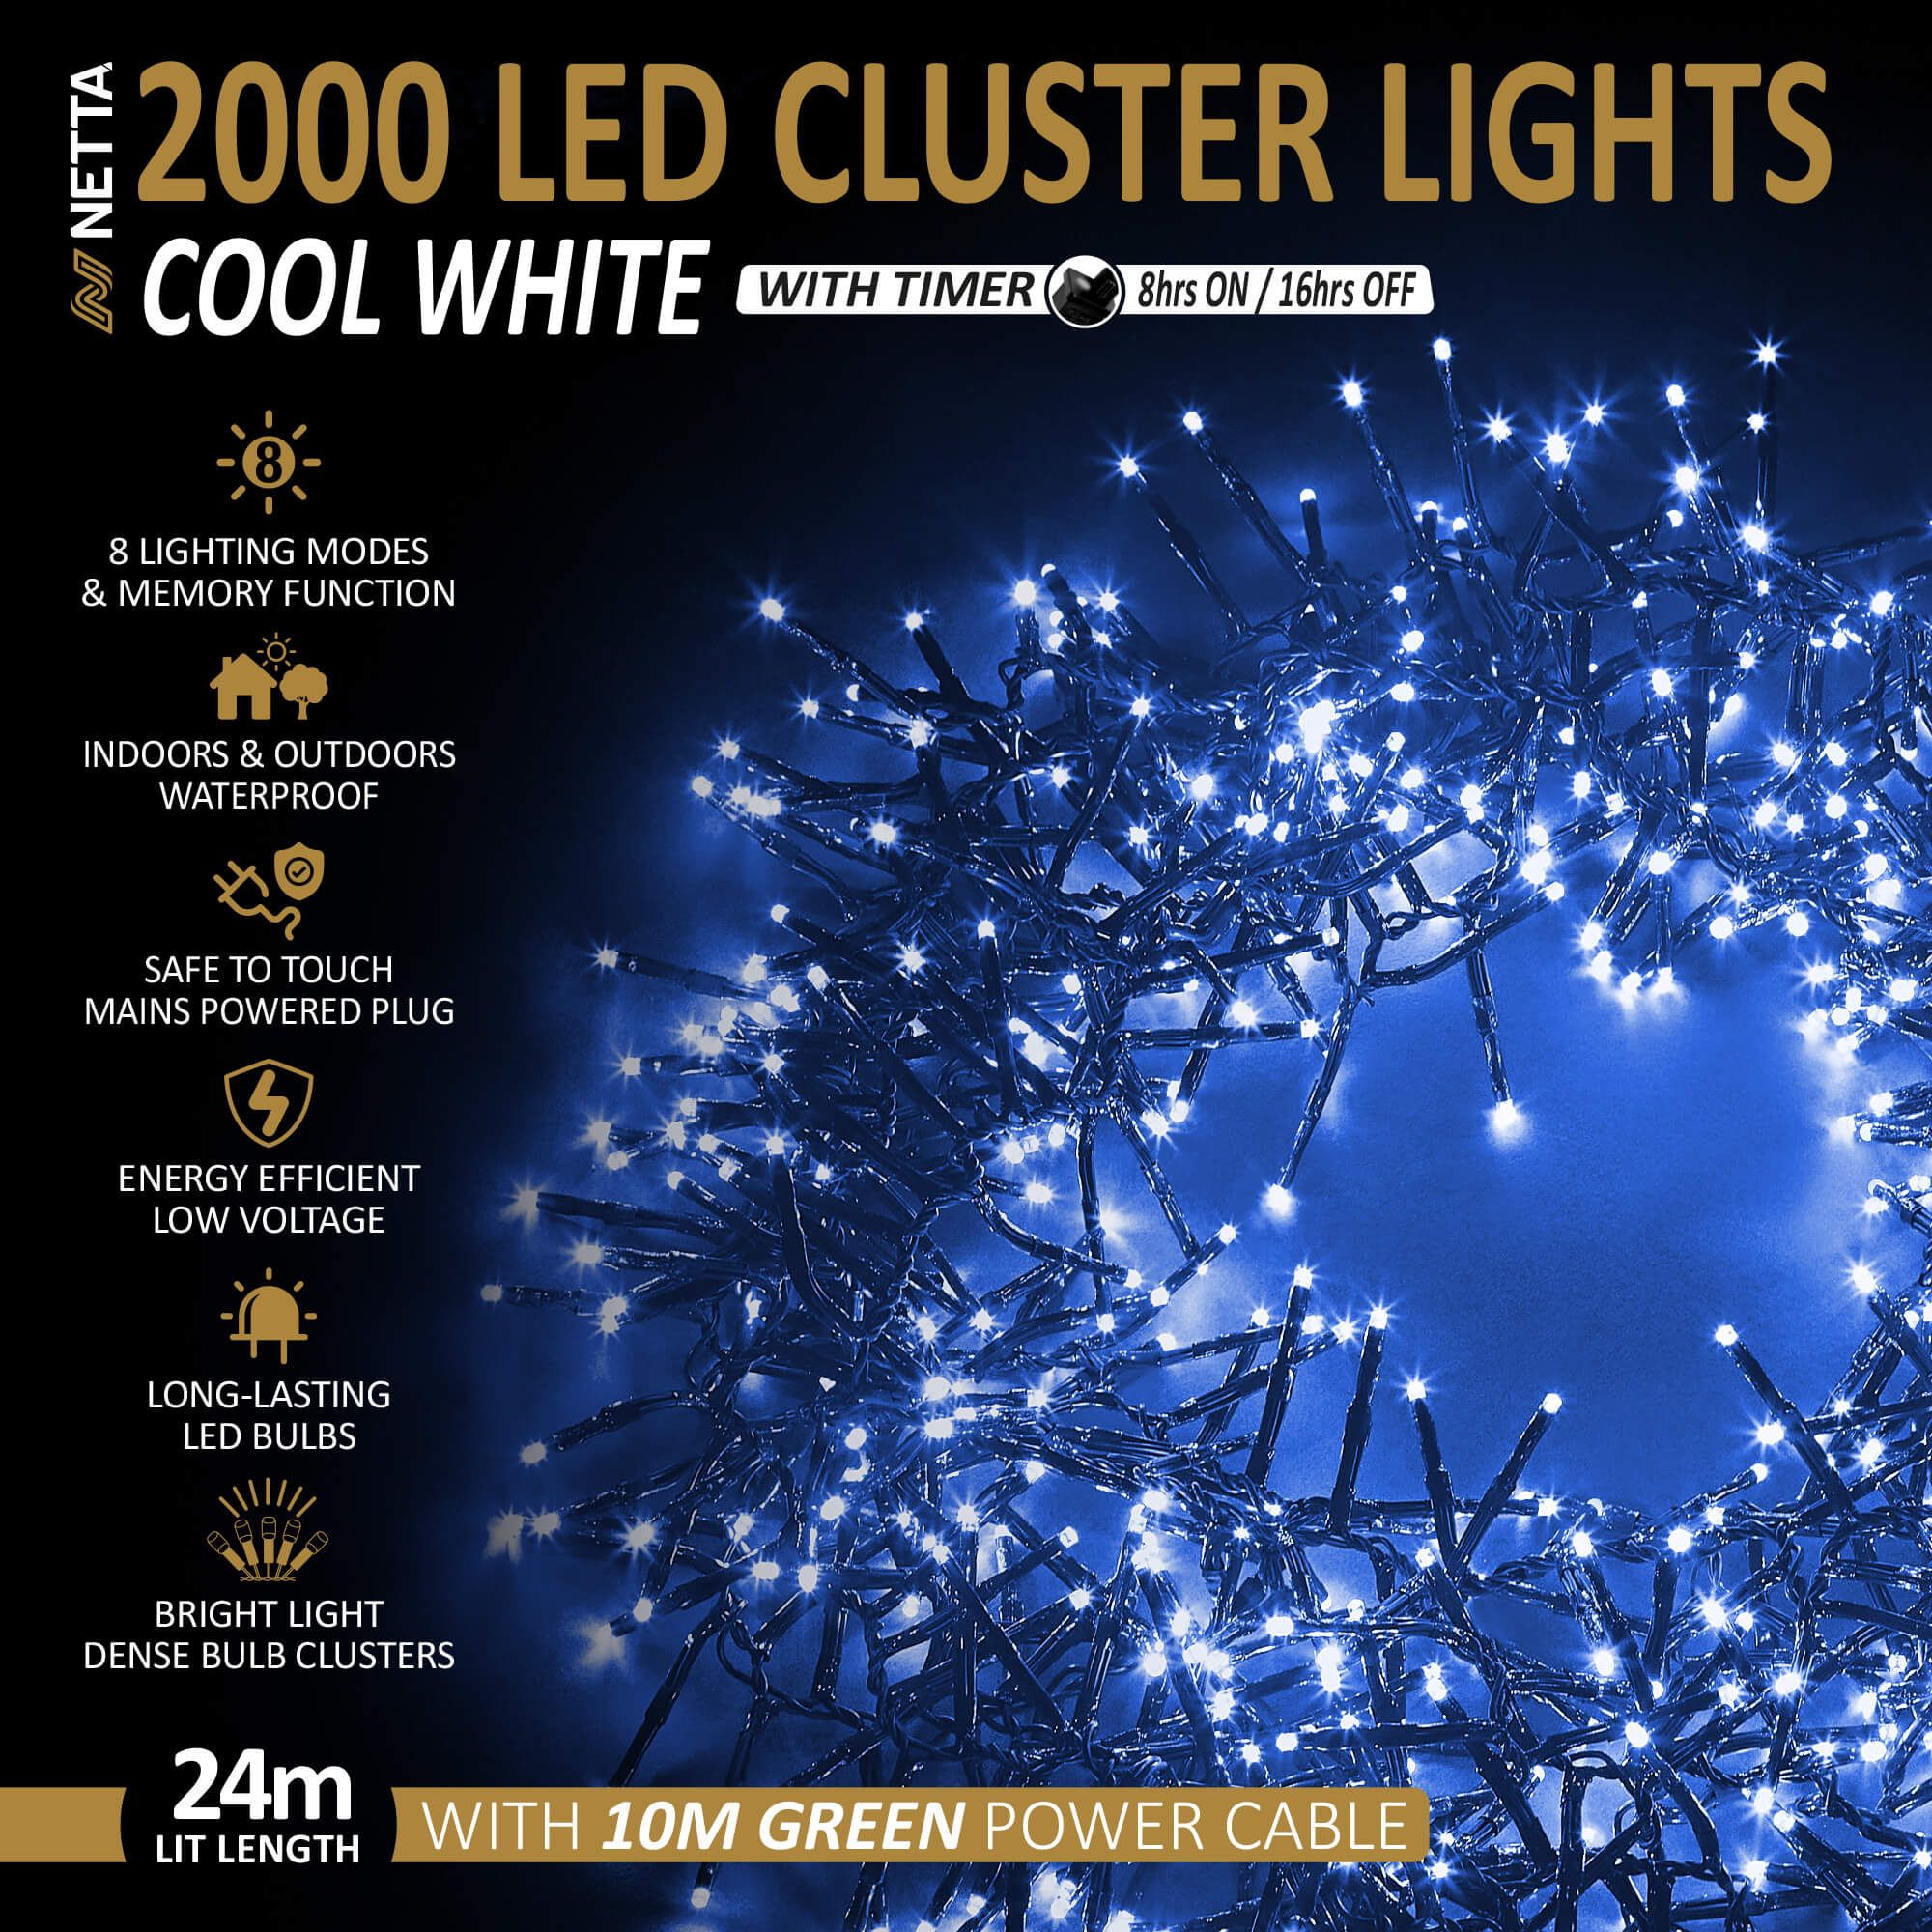 NETTA 2000LED Cluster String Lights - Cool White